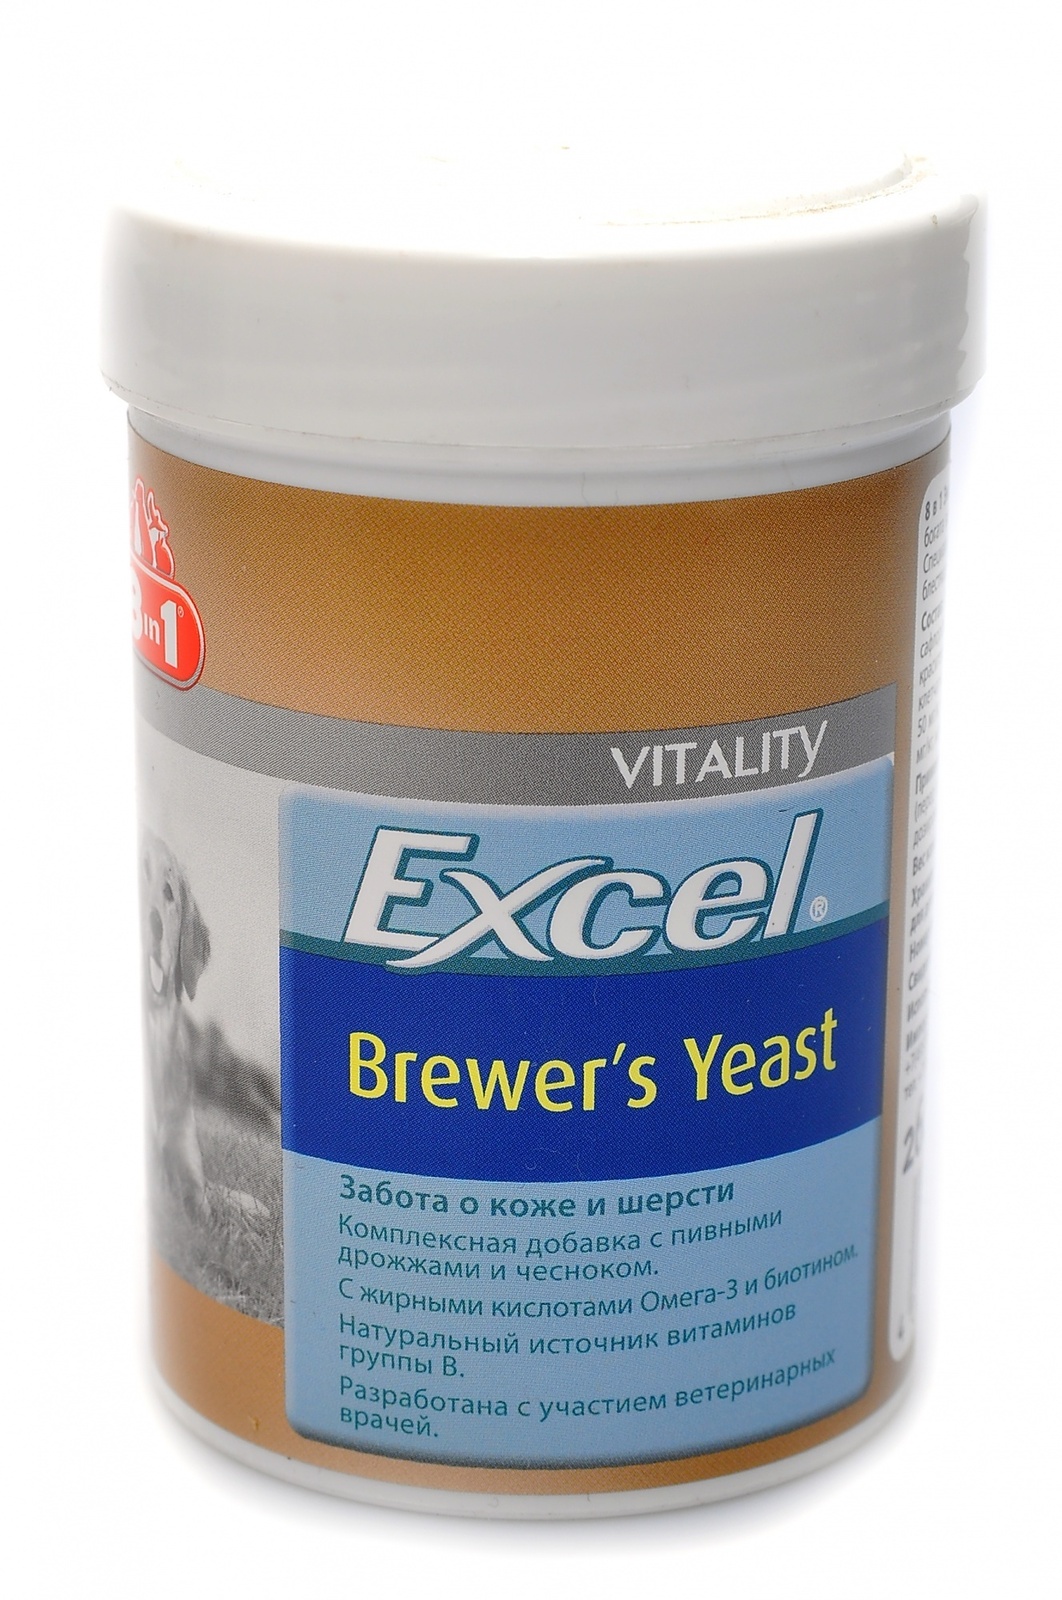 Витамины 8 в 1 для собак купить. Витамины для кожи и шерсти собак 8 в 1 excel Brewers. Пивные дрожжи для кошек для шерсти и кожи эксель. 8in1 excel Brewer's yeast. Витамины для кошек excel Brewers yeast.